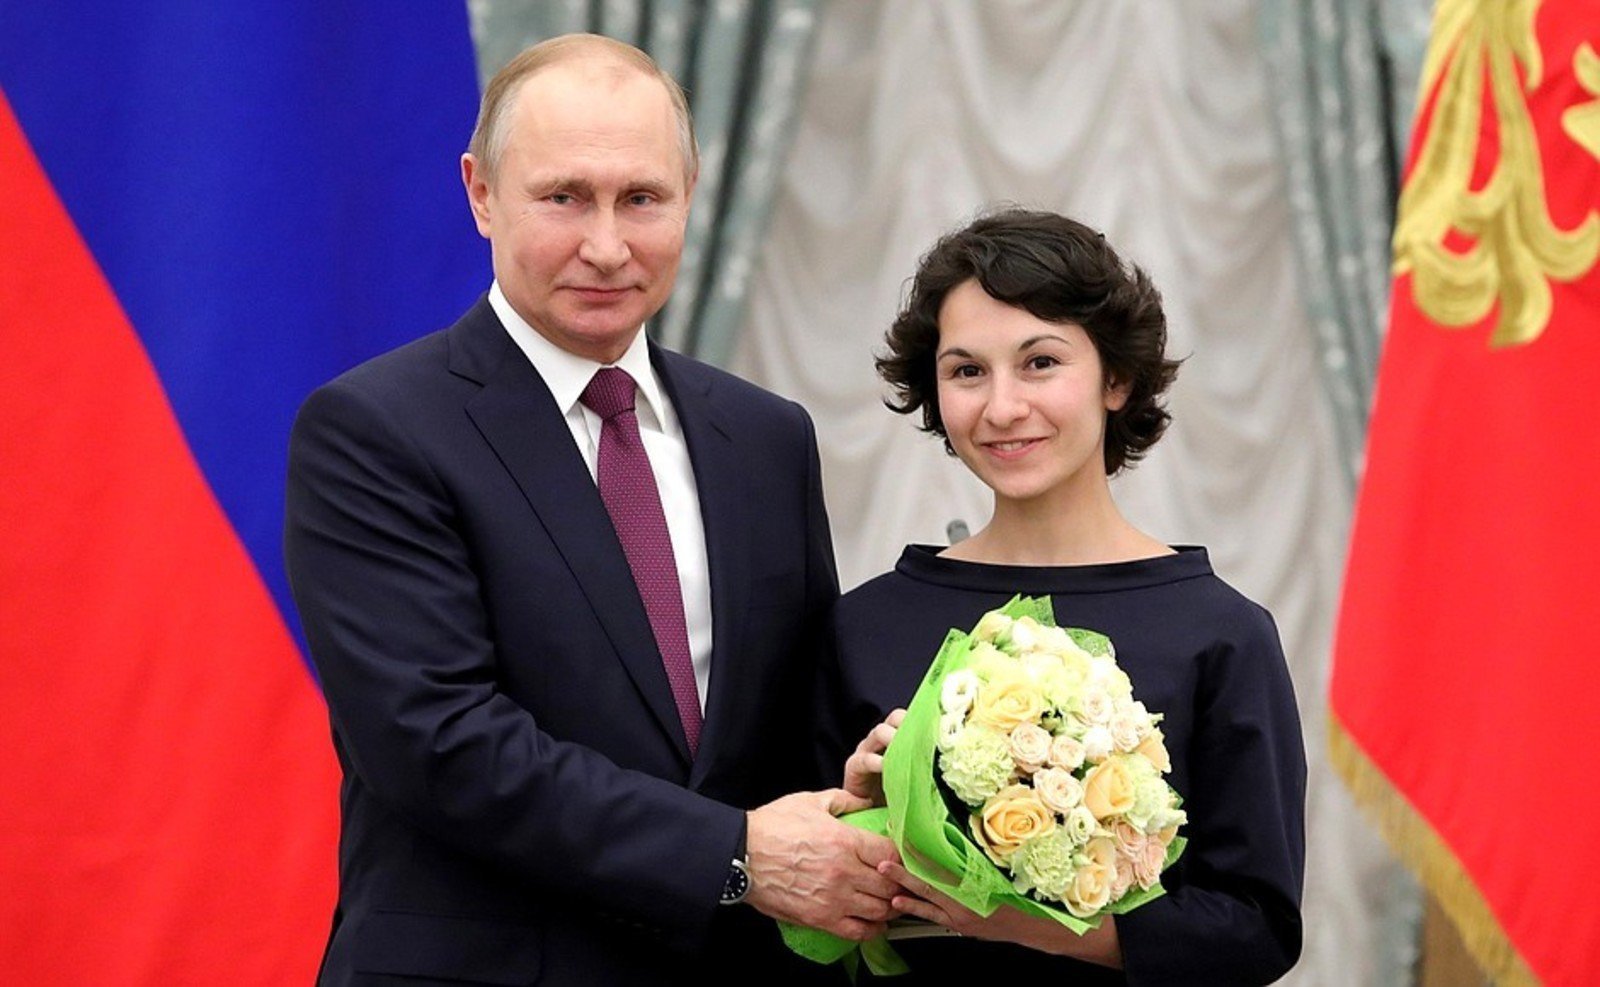 Дорогу молодым: Владимир Путин наградил выдающихся деятелей культуры 1-vvpkulytura